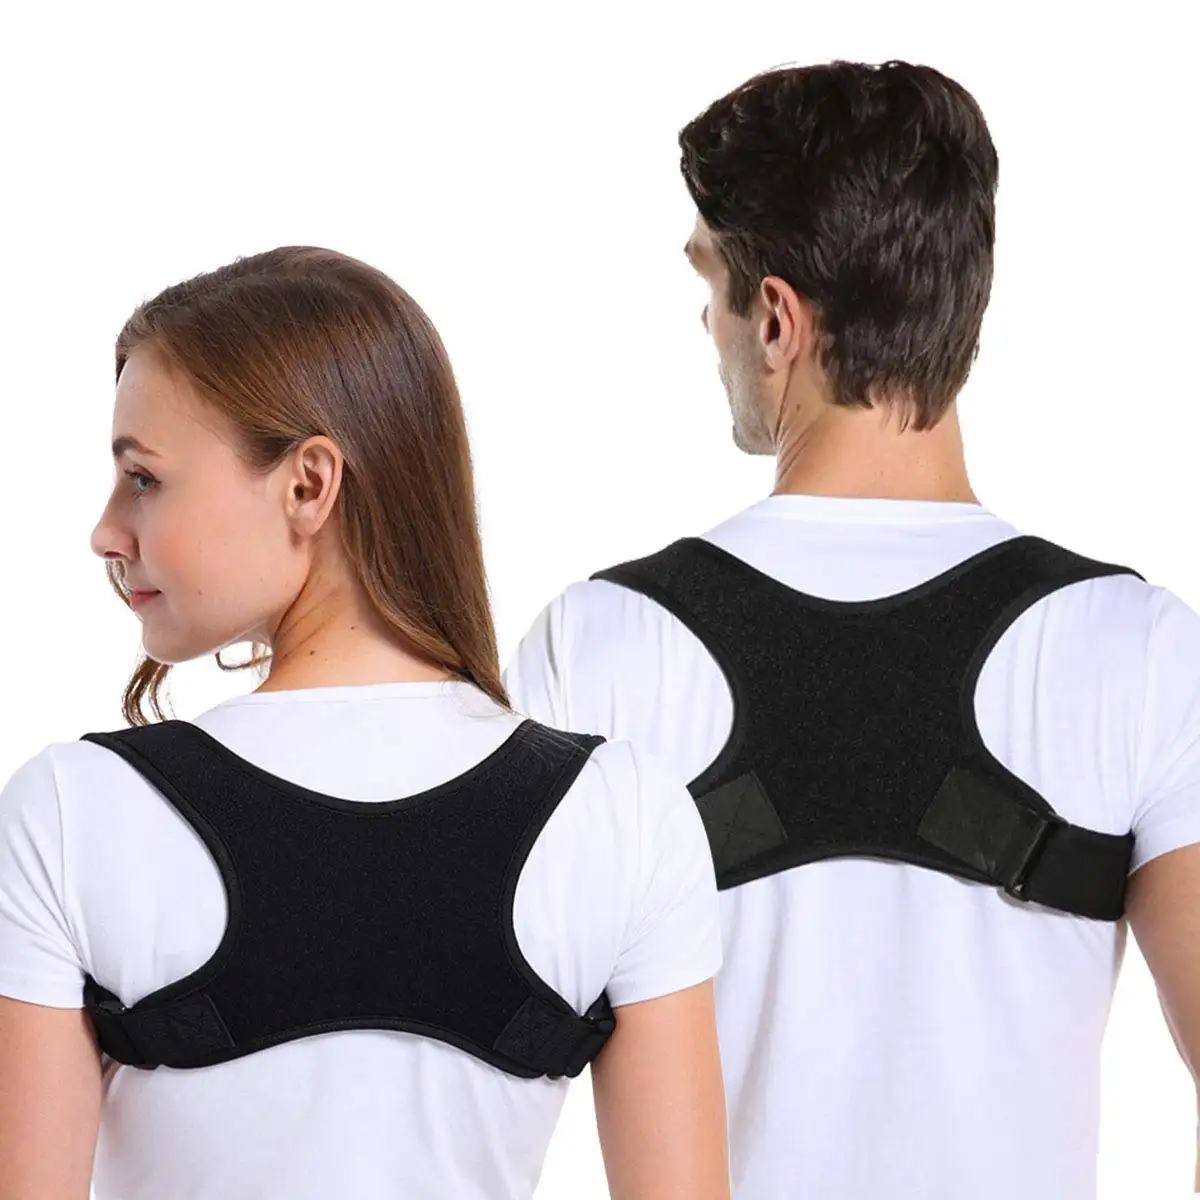 Upper back Support Neoprene Clavicle shoulder Brace back brace to correct posture